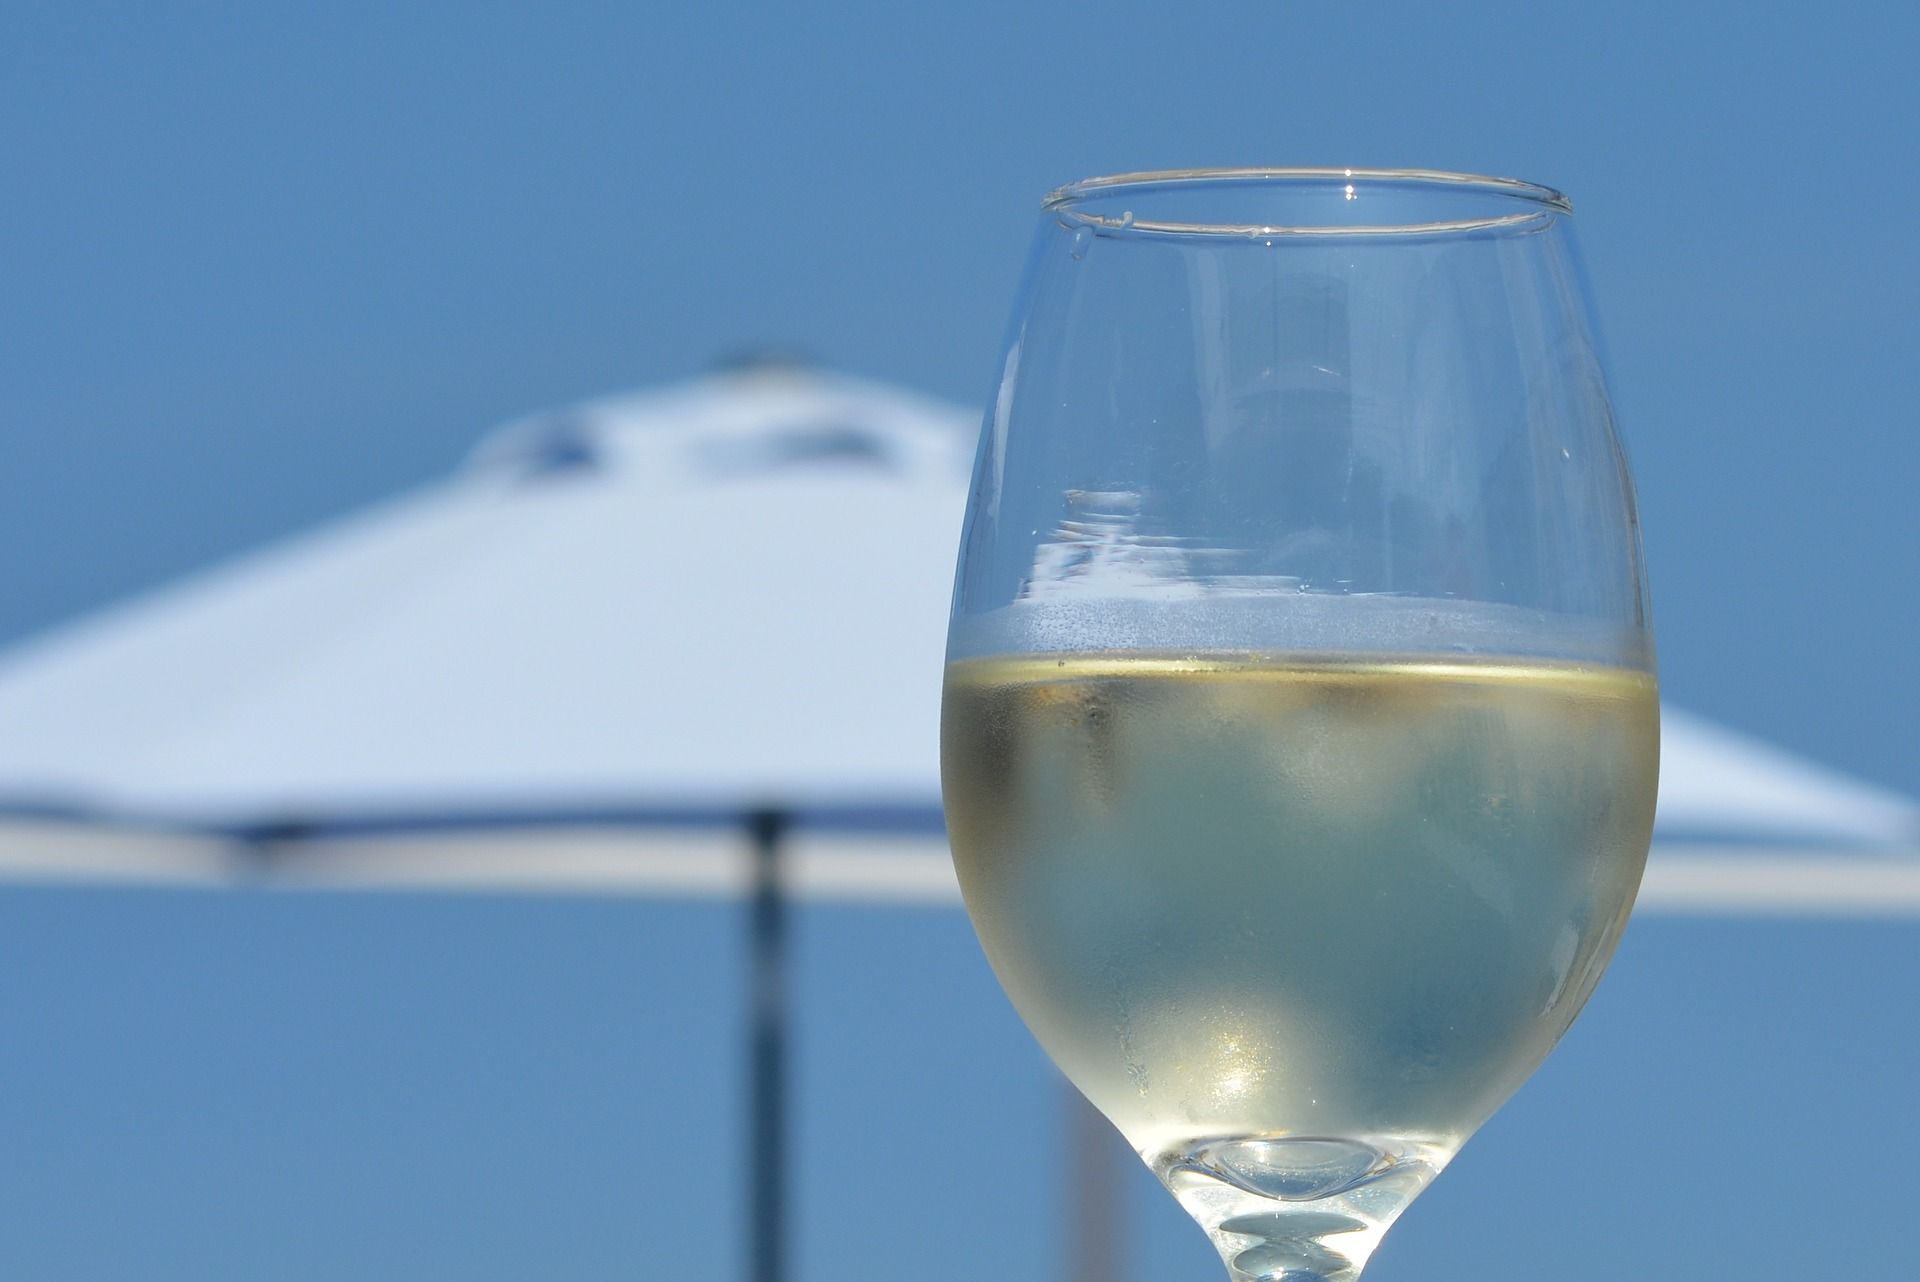 Ein Glas Weißwein ist im Vordergrund des Bildes. Im Hintergrund ist ein heller Sonnenschirm zu sehen.